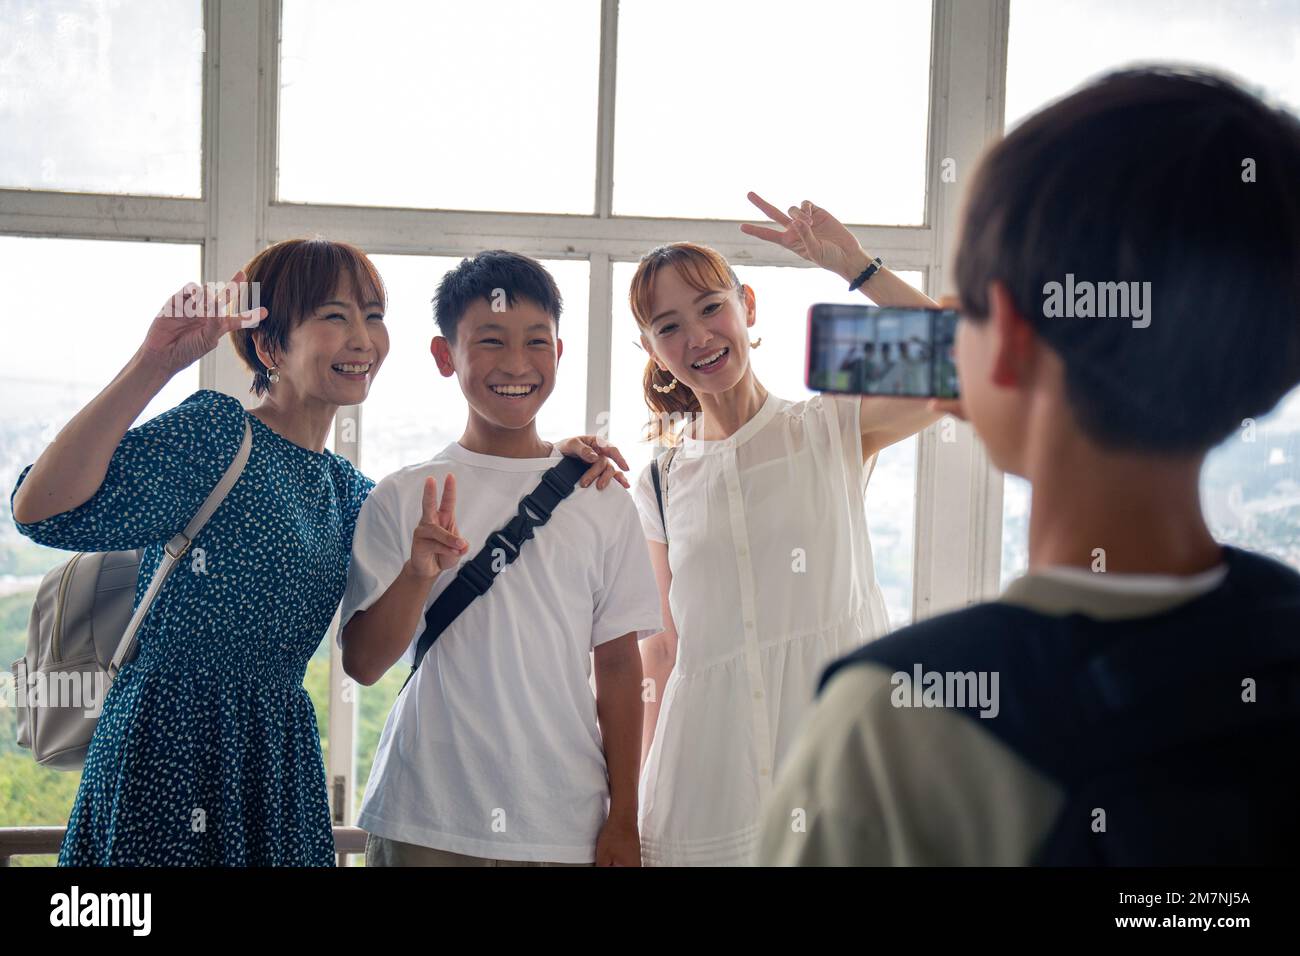 Ein Junge, der mit seinem Handy drei Japaner fotografiert, einen 13-jährigen Jungen, seine Mutter und einen Freund. Stockfoto